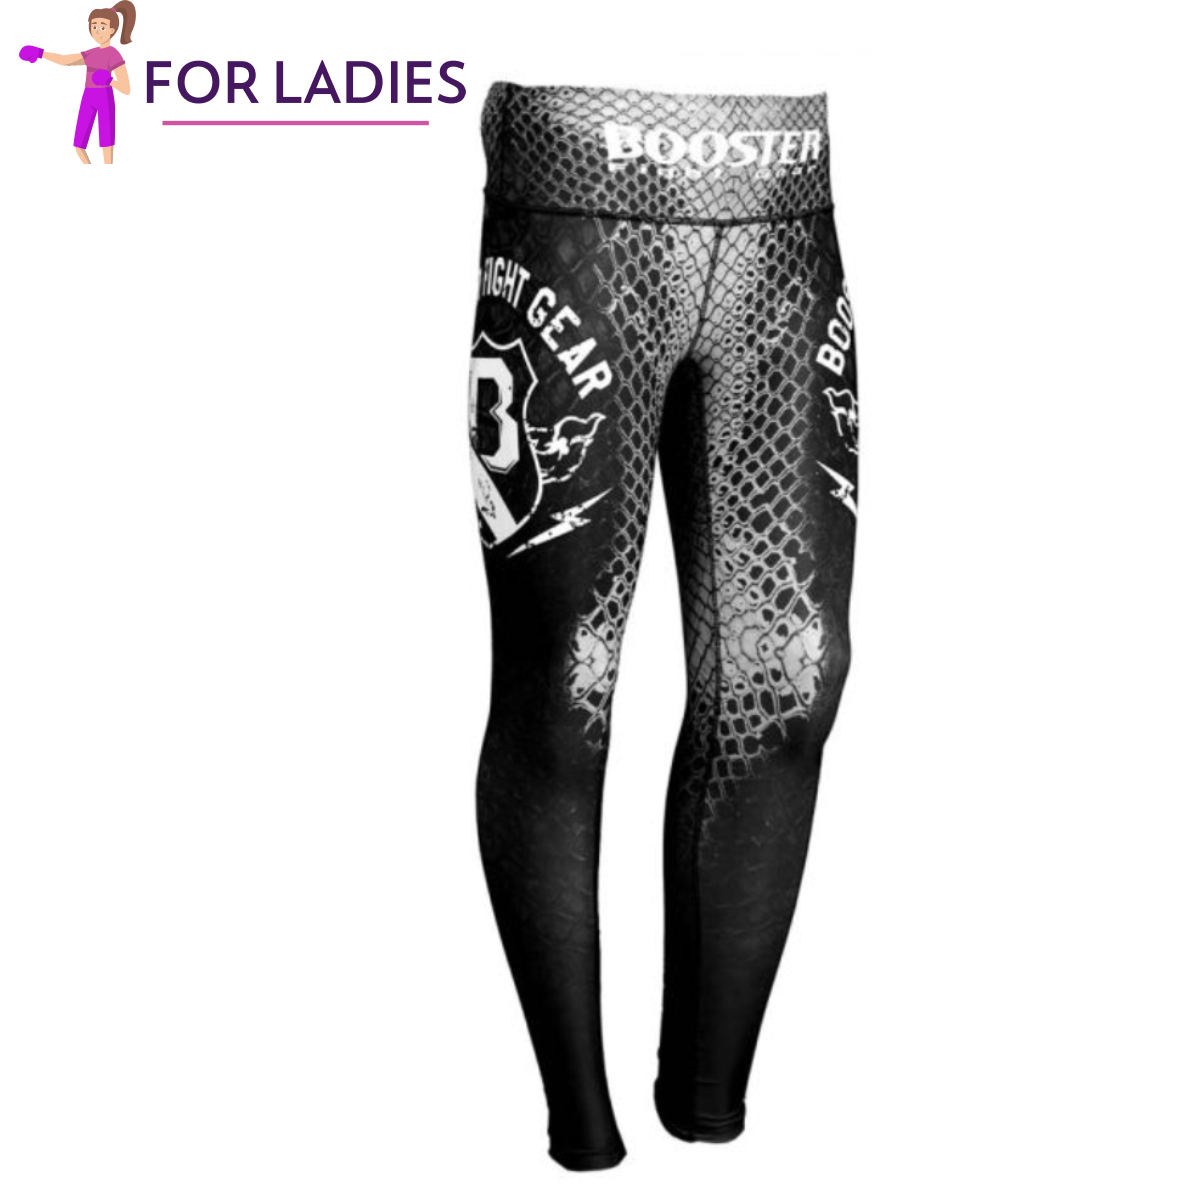 Booster - AMAZON SPATS - Legging - Compressie broek voor dames - BLACK